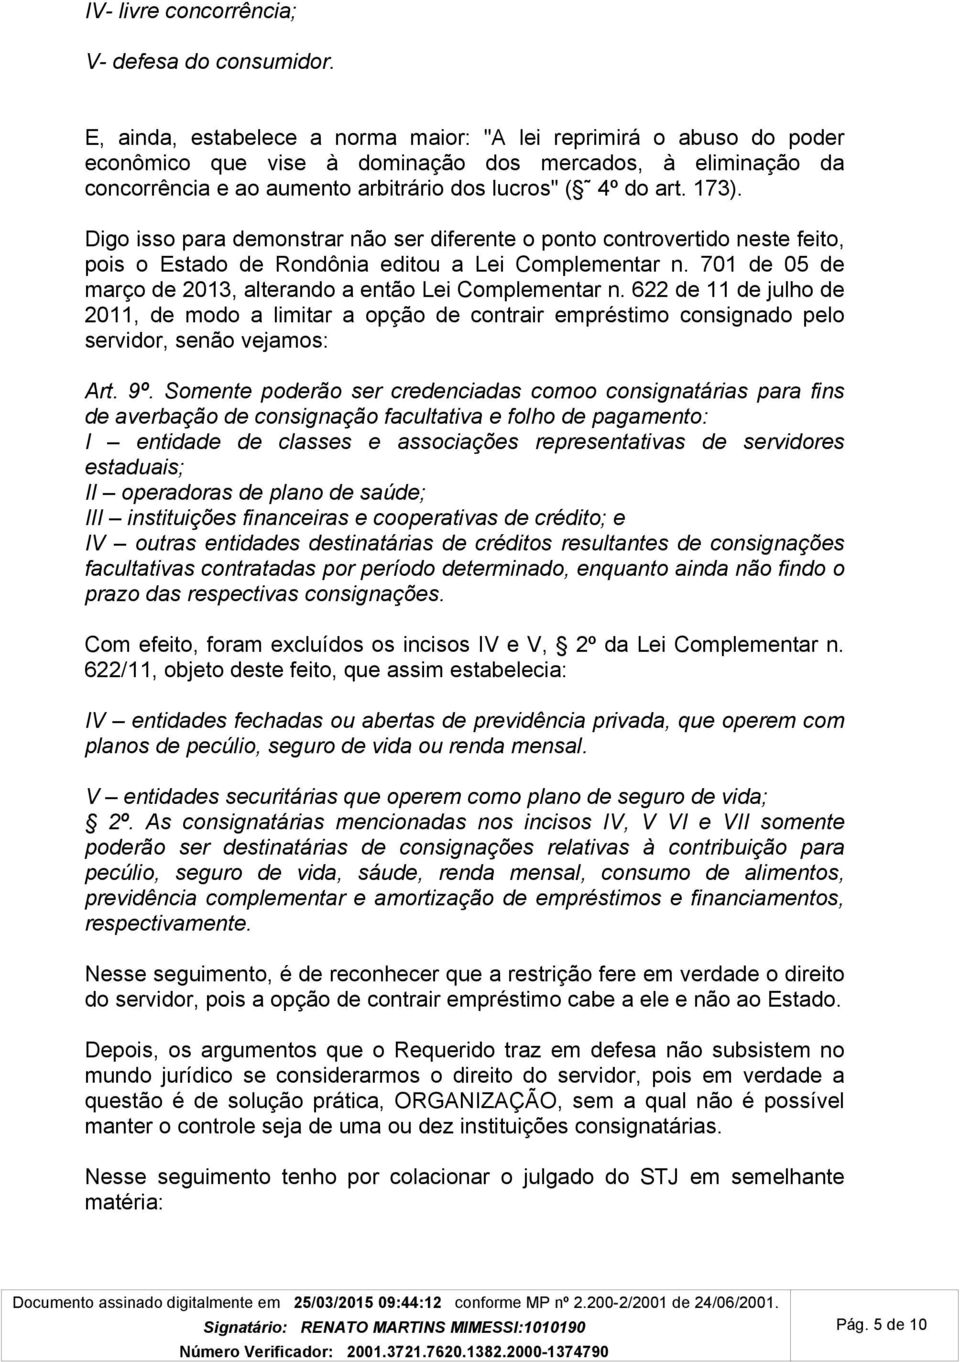 Digo isso para demonstrar não ser diferente o ponto controvertido neste feito, pois o Estado de Rondônia editou a Lei Complementar n. 701 de 05 de março de 2013, alterando a então Lei Complementar n.